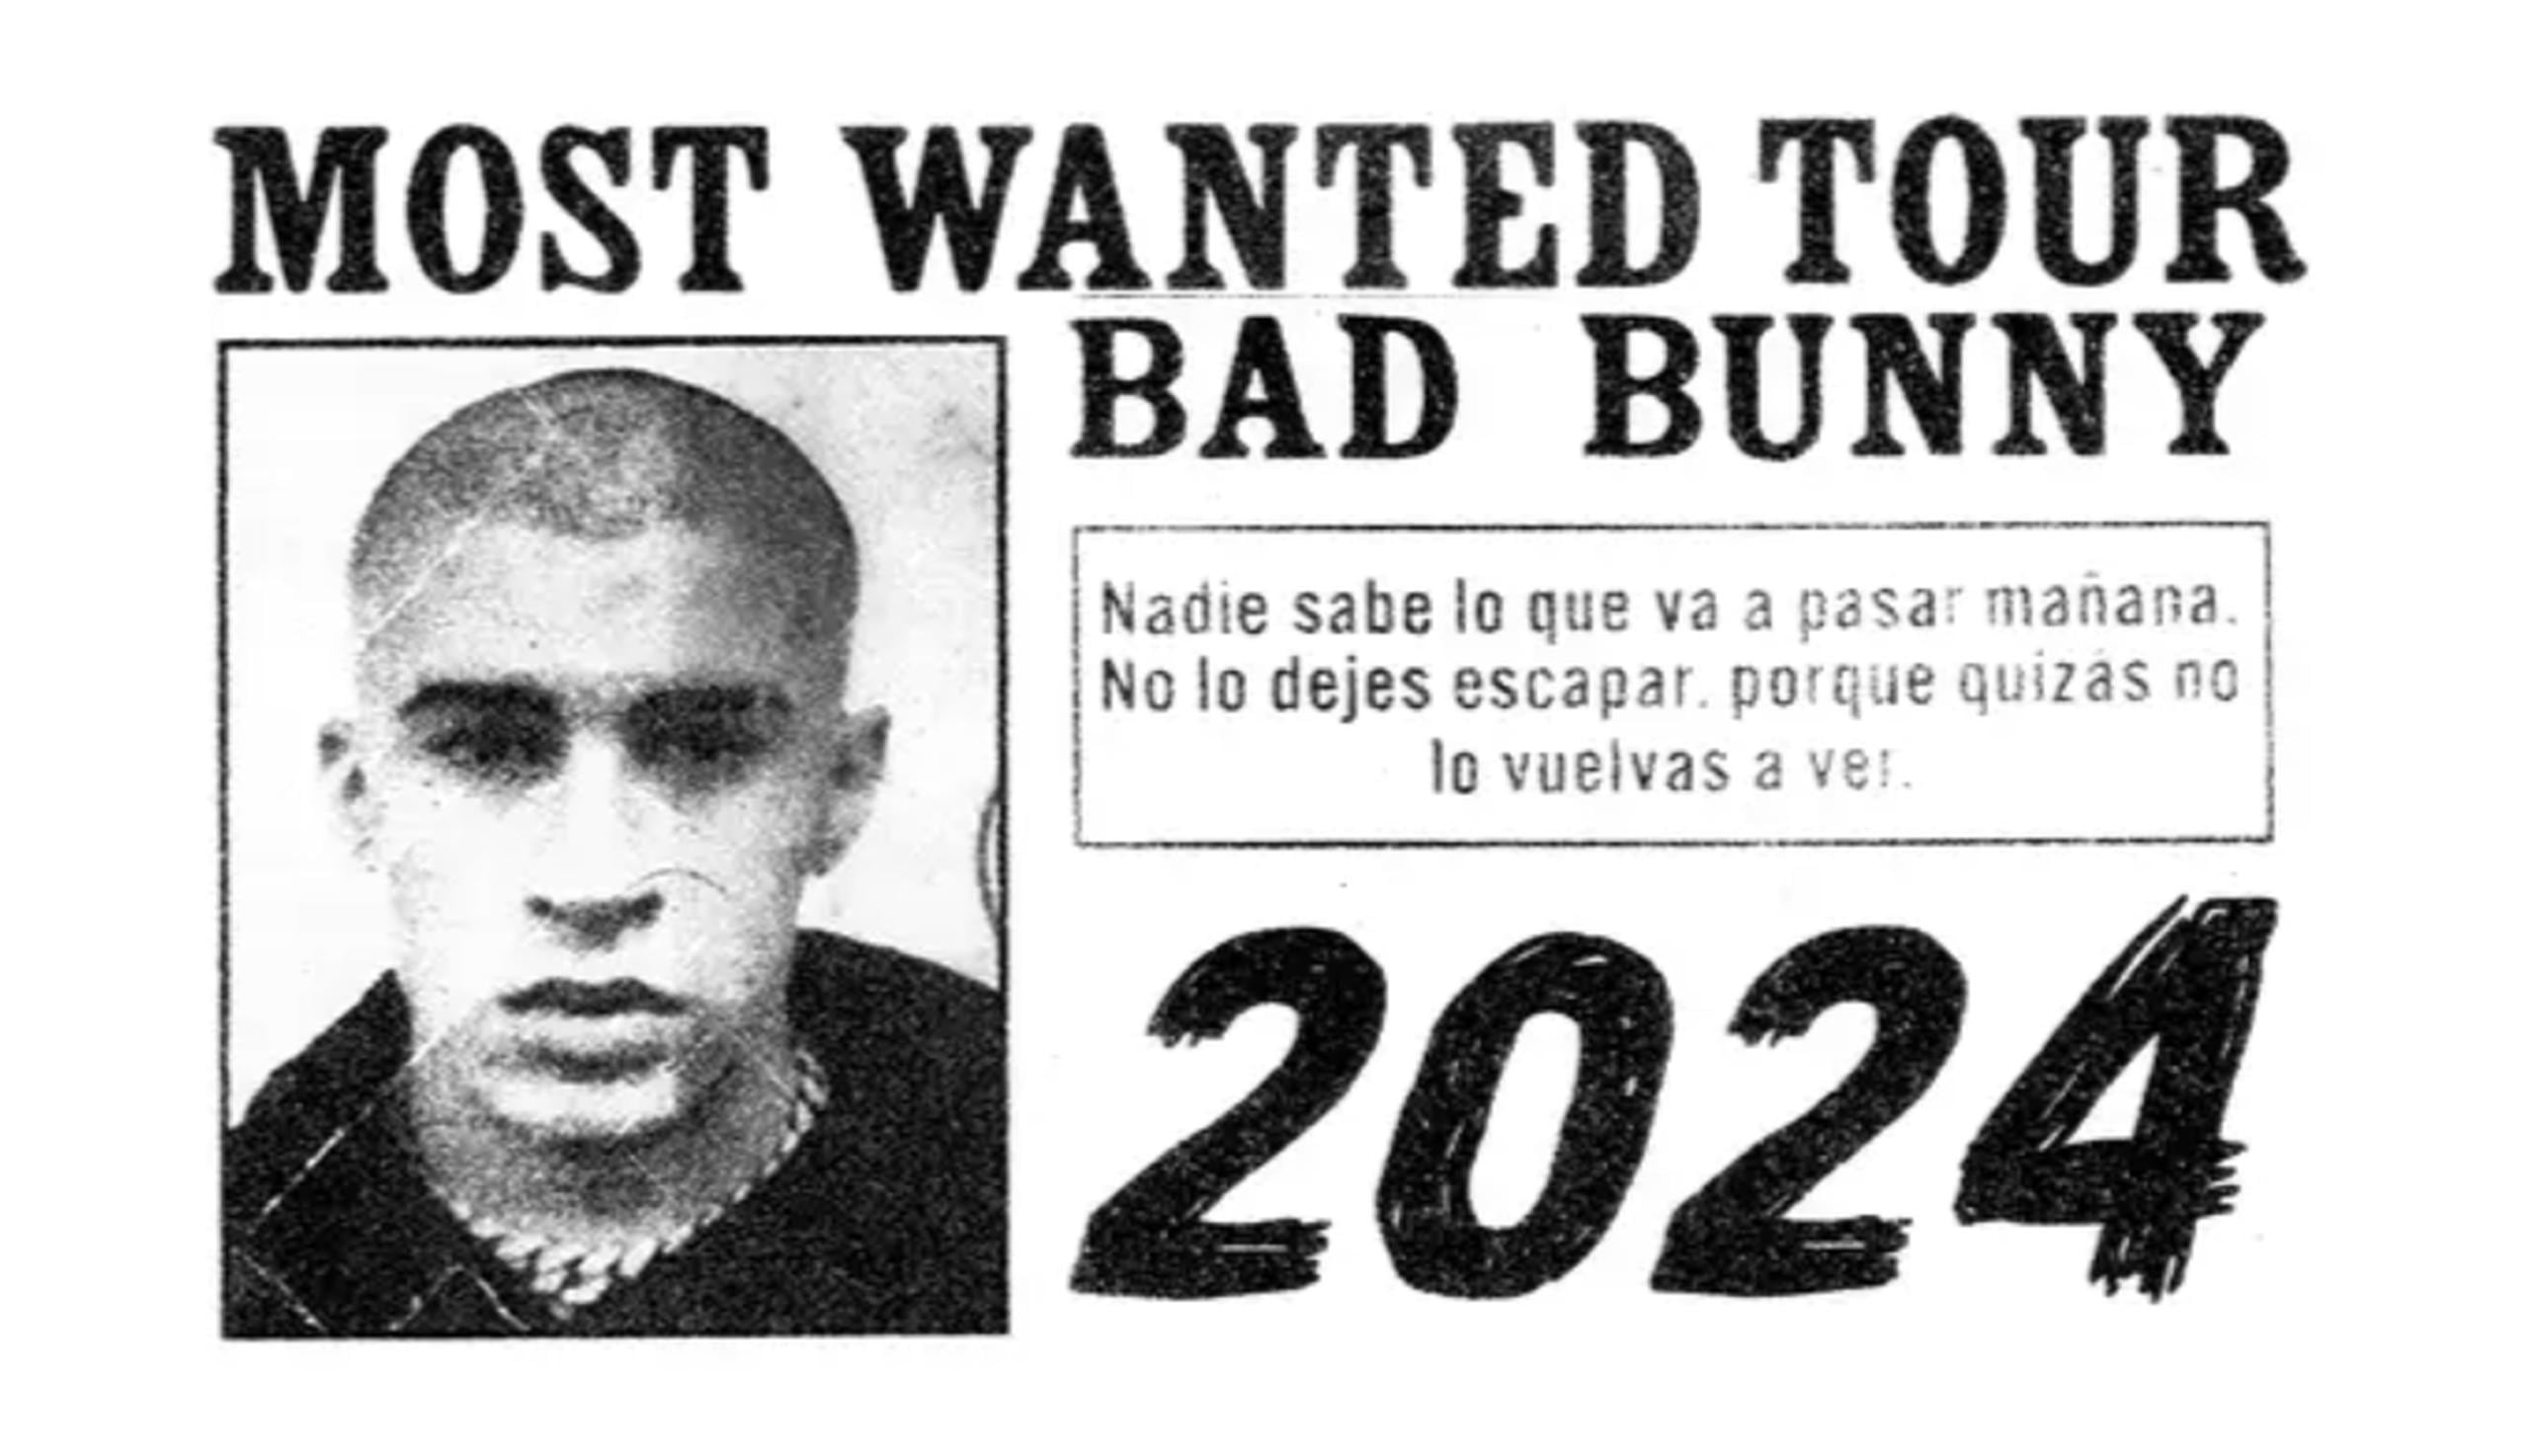 Promoción del "Most Wanted Tour" de Bad Bunny.